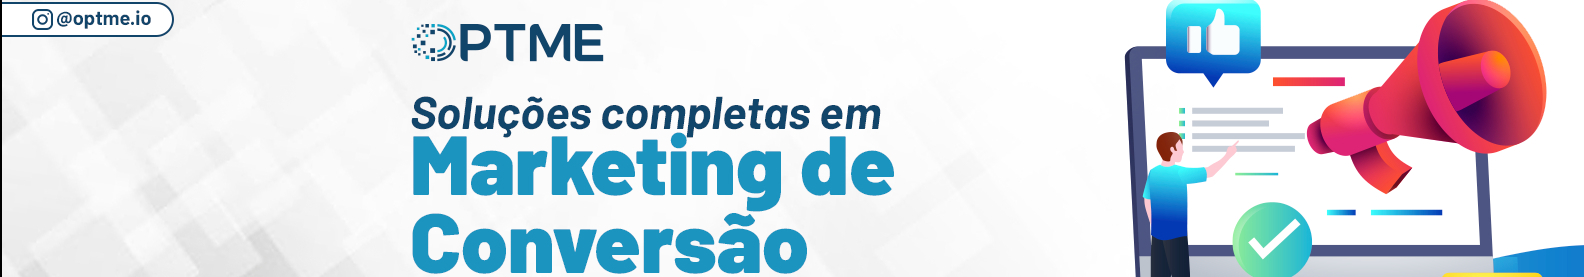 Optme Marketing de Conversão's profile banner